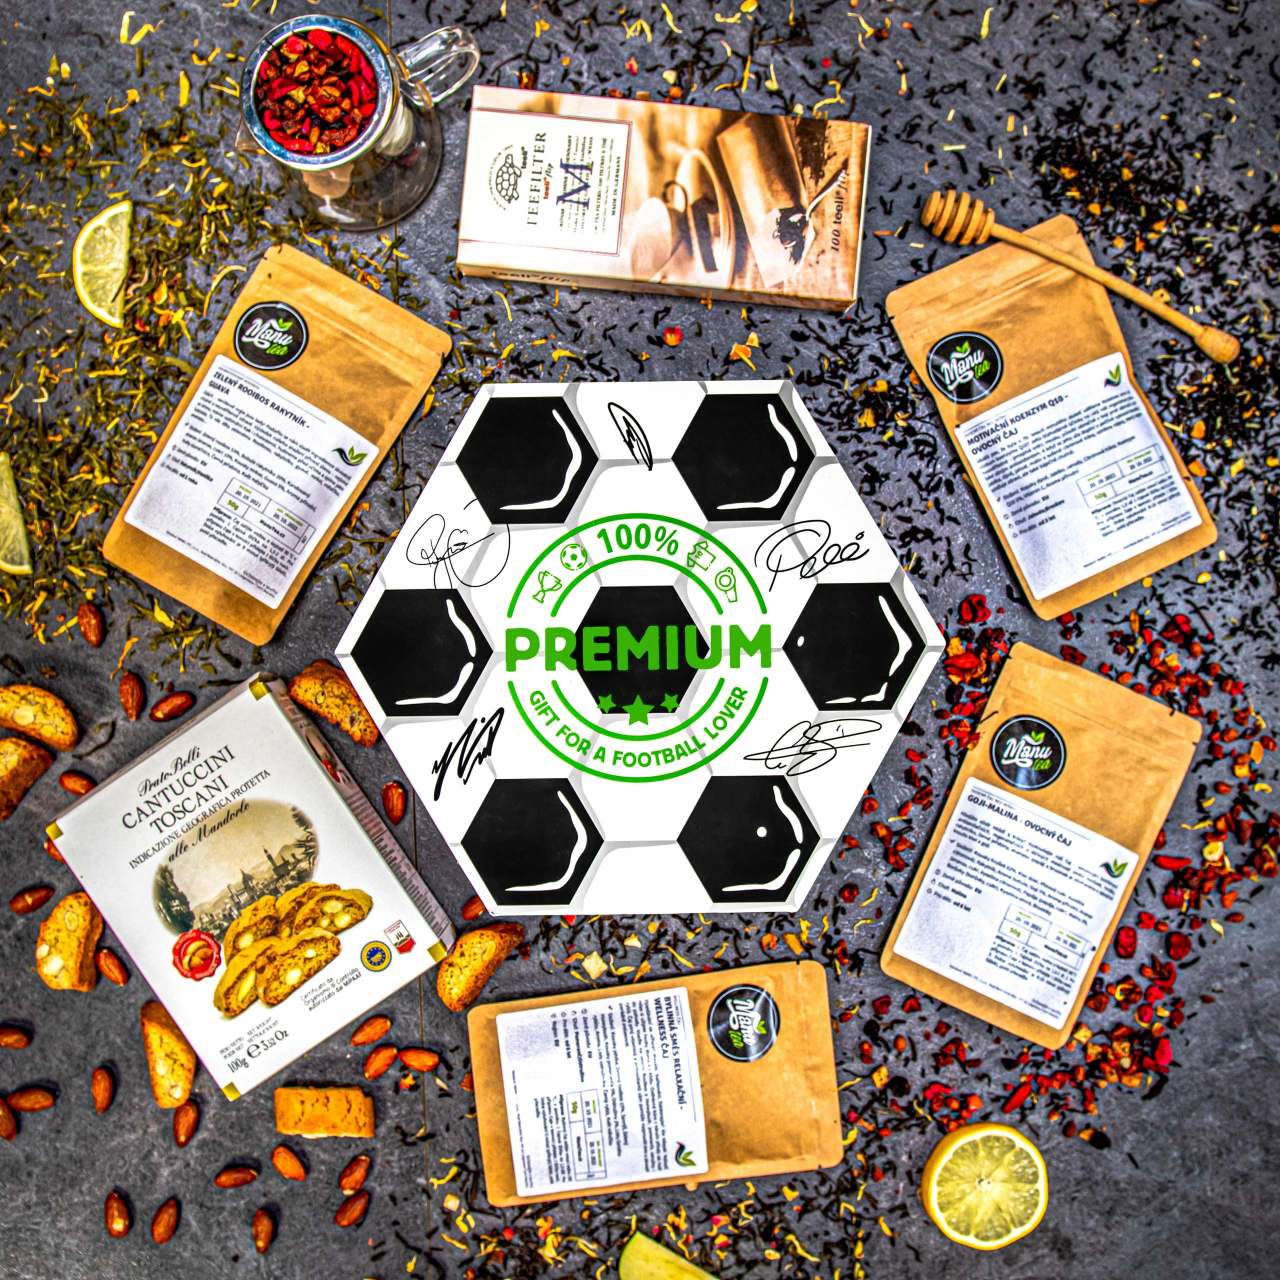 Hexagon plný kvalitních čajů - Fotbalový